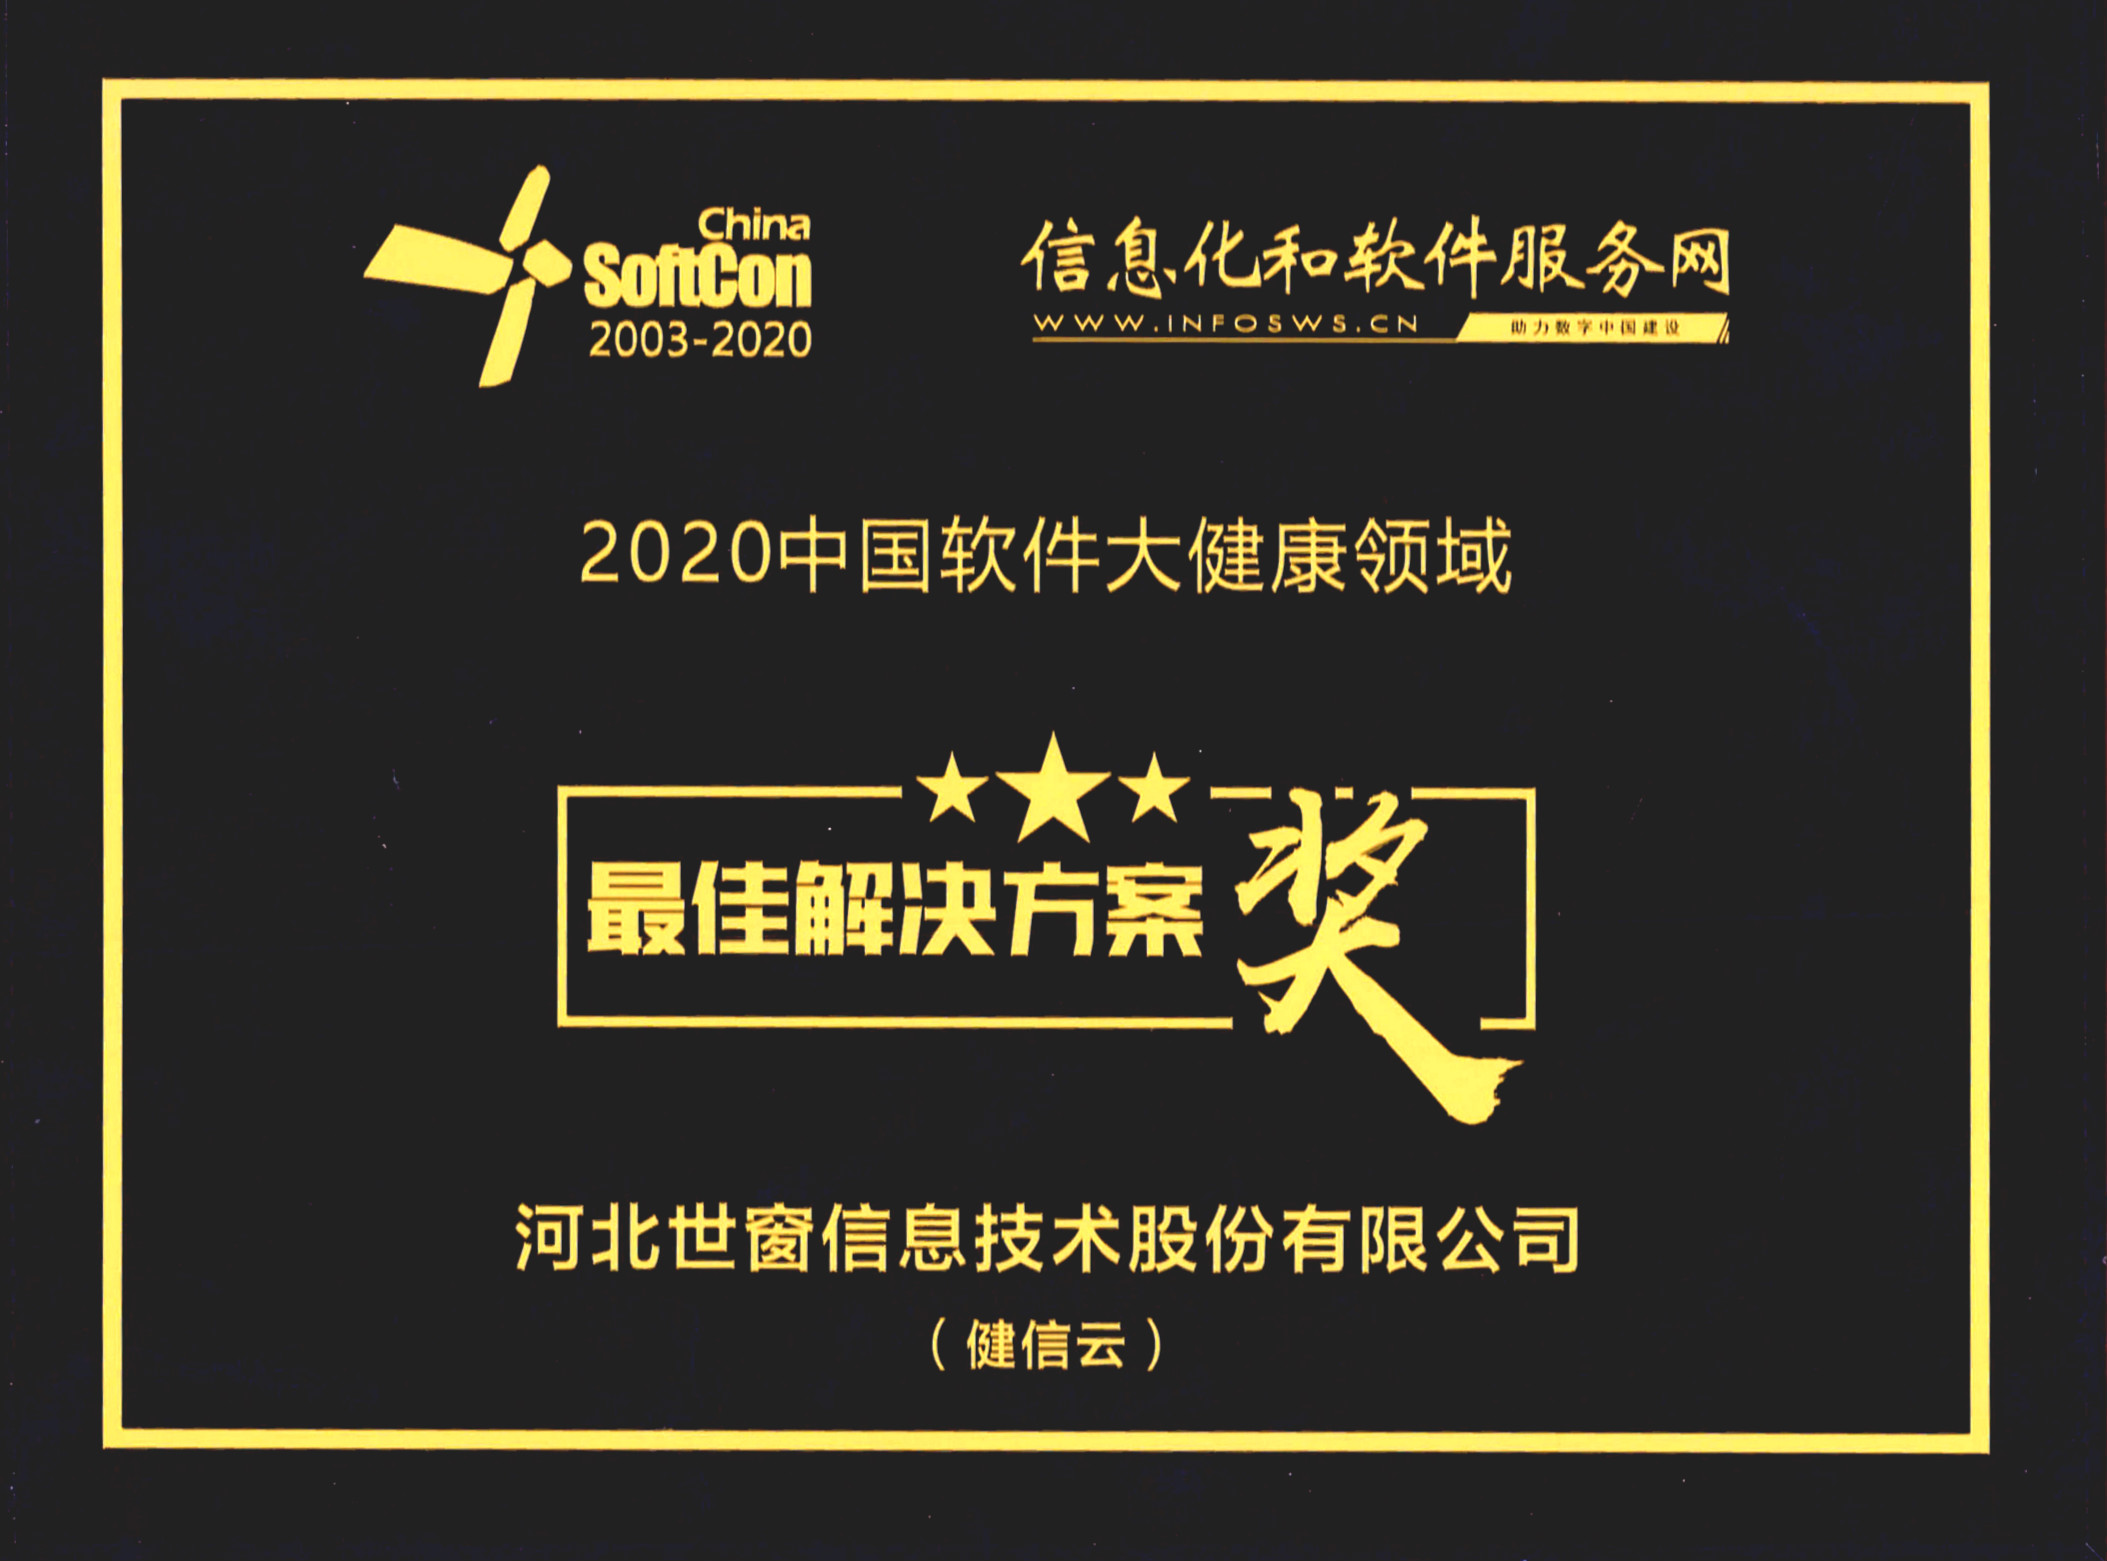 世窗信息“健信云”荣获“2020中国软件大健康领域最佳解决方案奖”